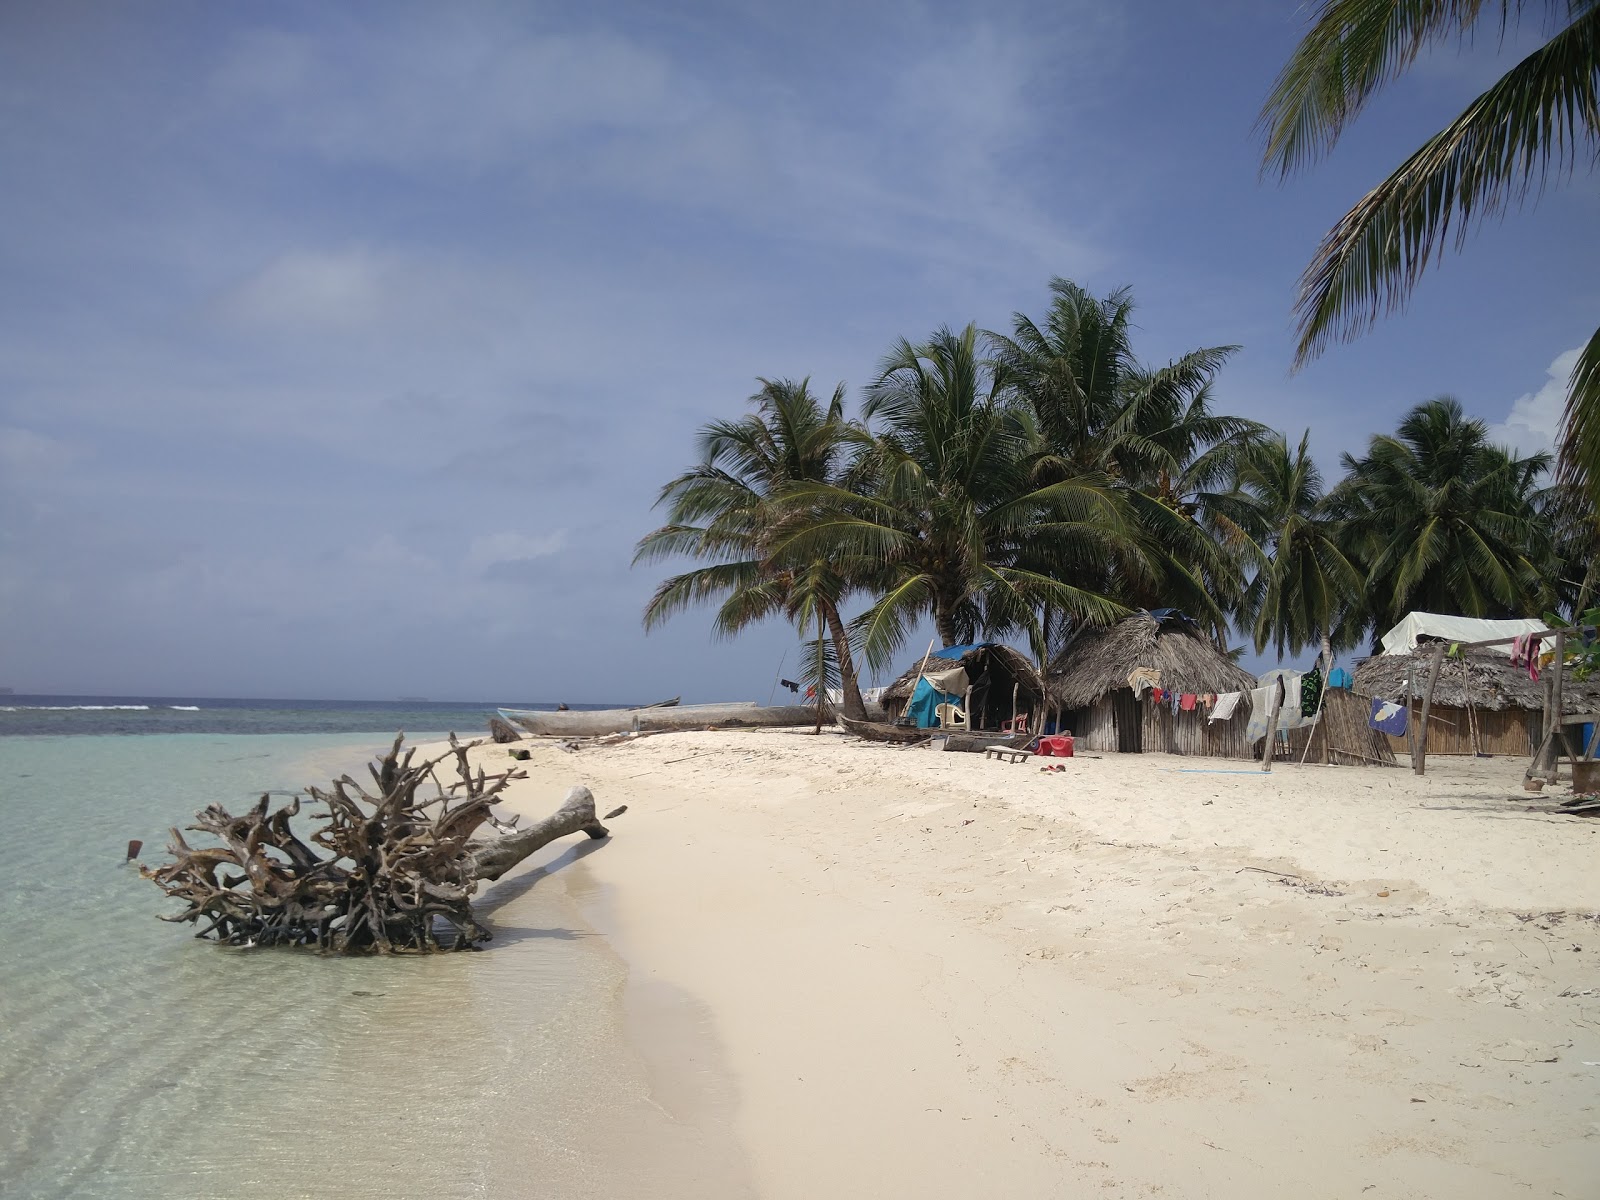 Fotografie cu Coco Blanco Island baech cu o suprafață de nisip fin alb